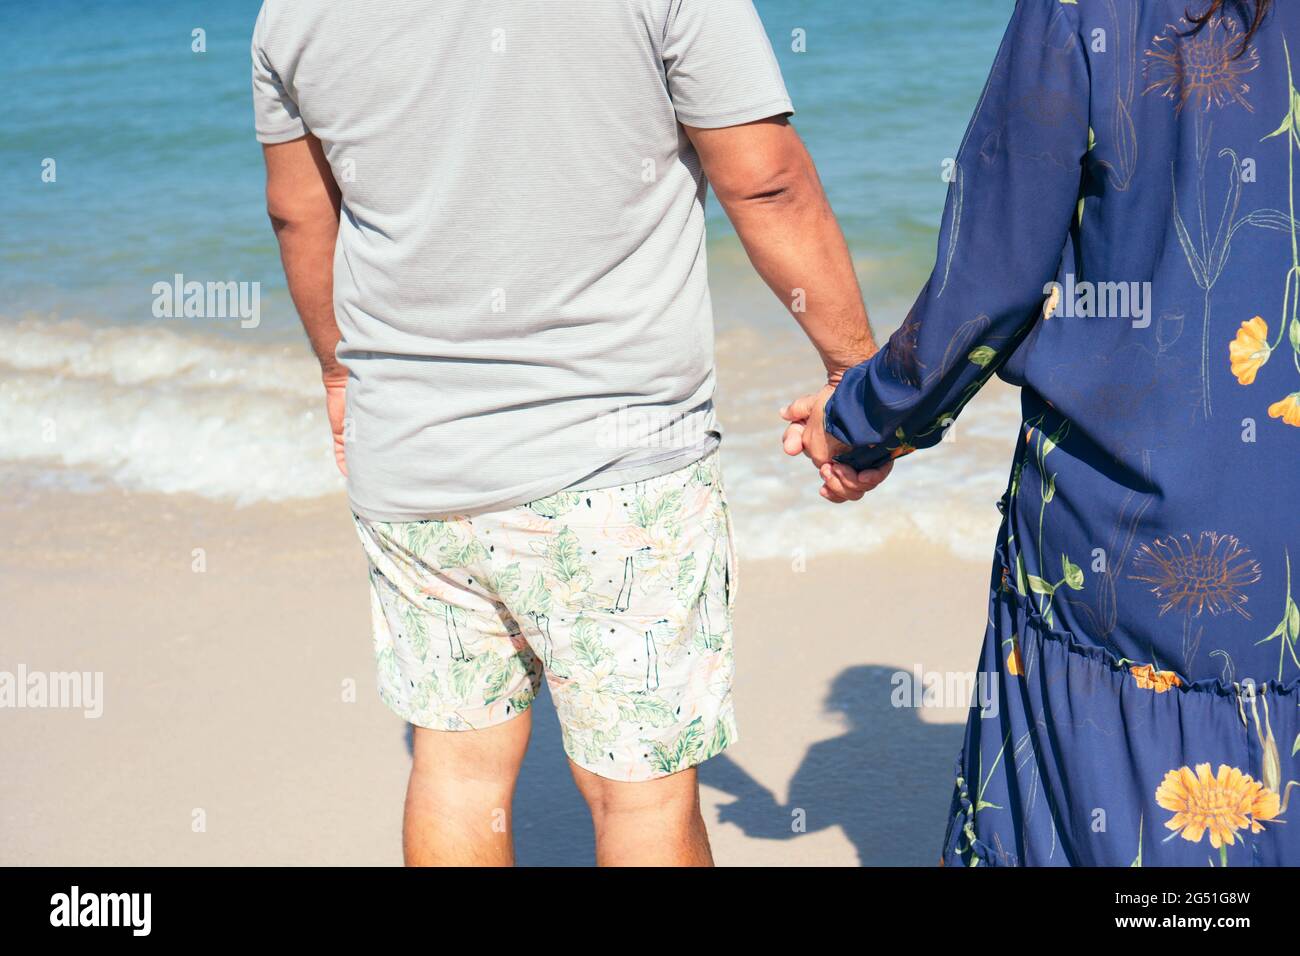 Ein älteres Paar stand Hand in Hand mit dem Strand vor ihnen. Stockfoto